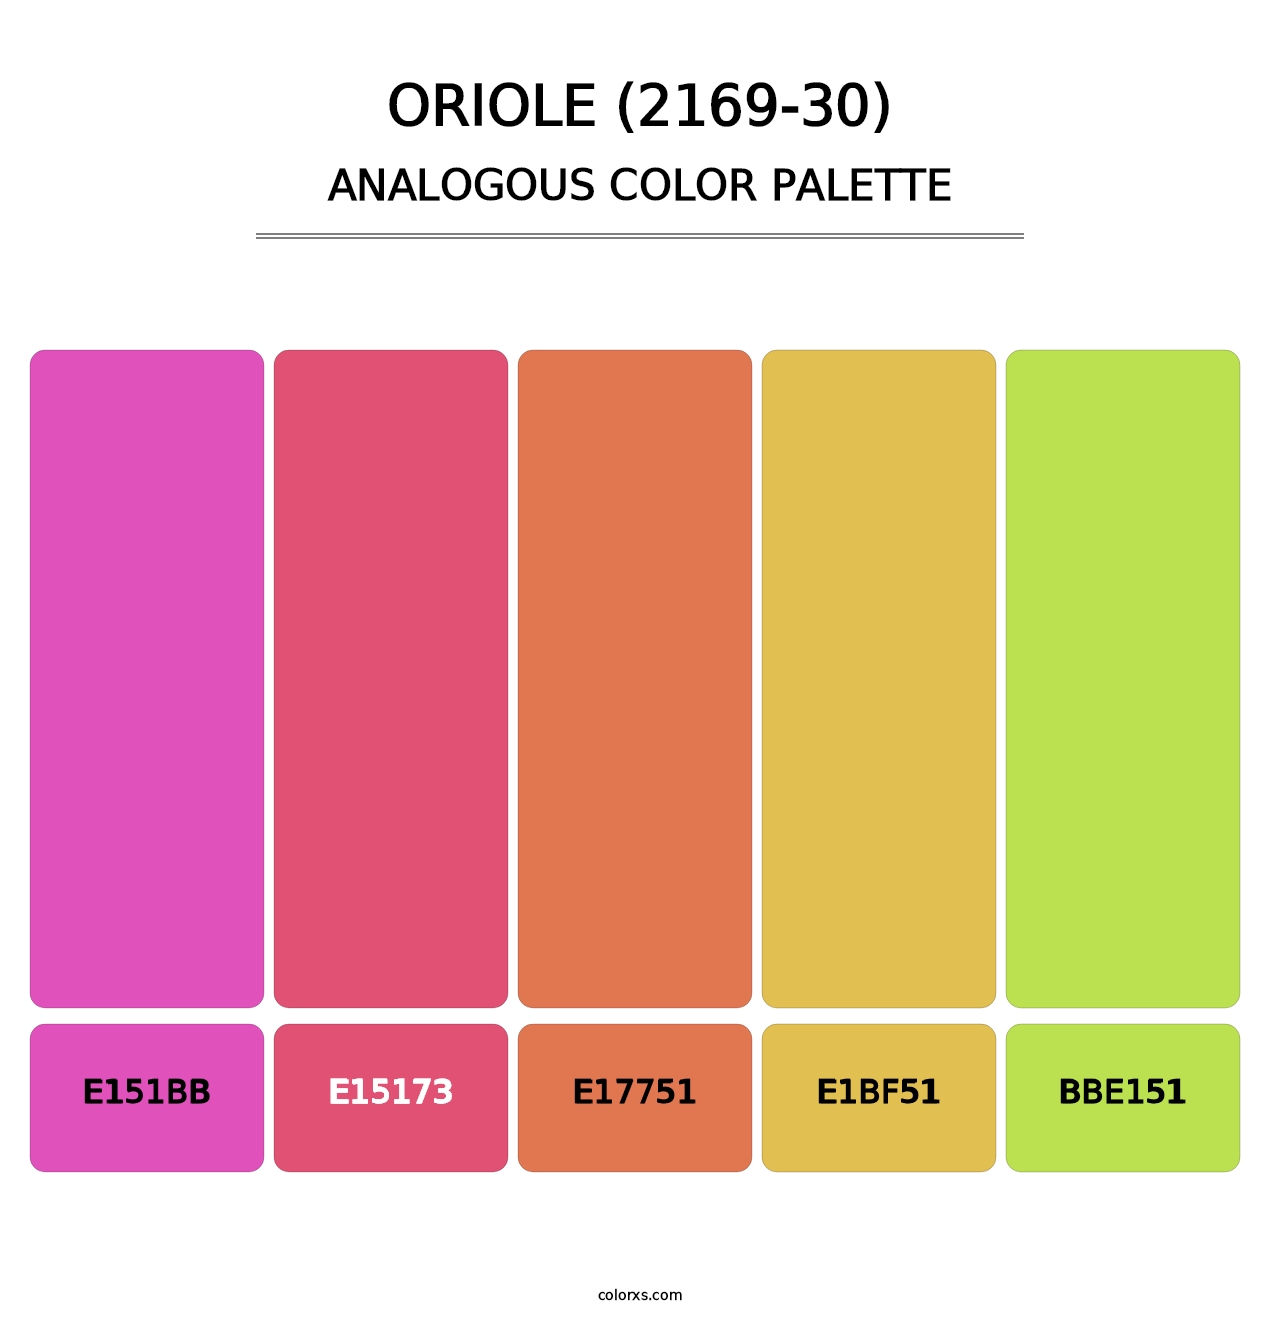 Oriole (2169-30) - Analogous Color Palette